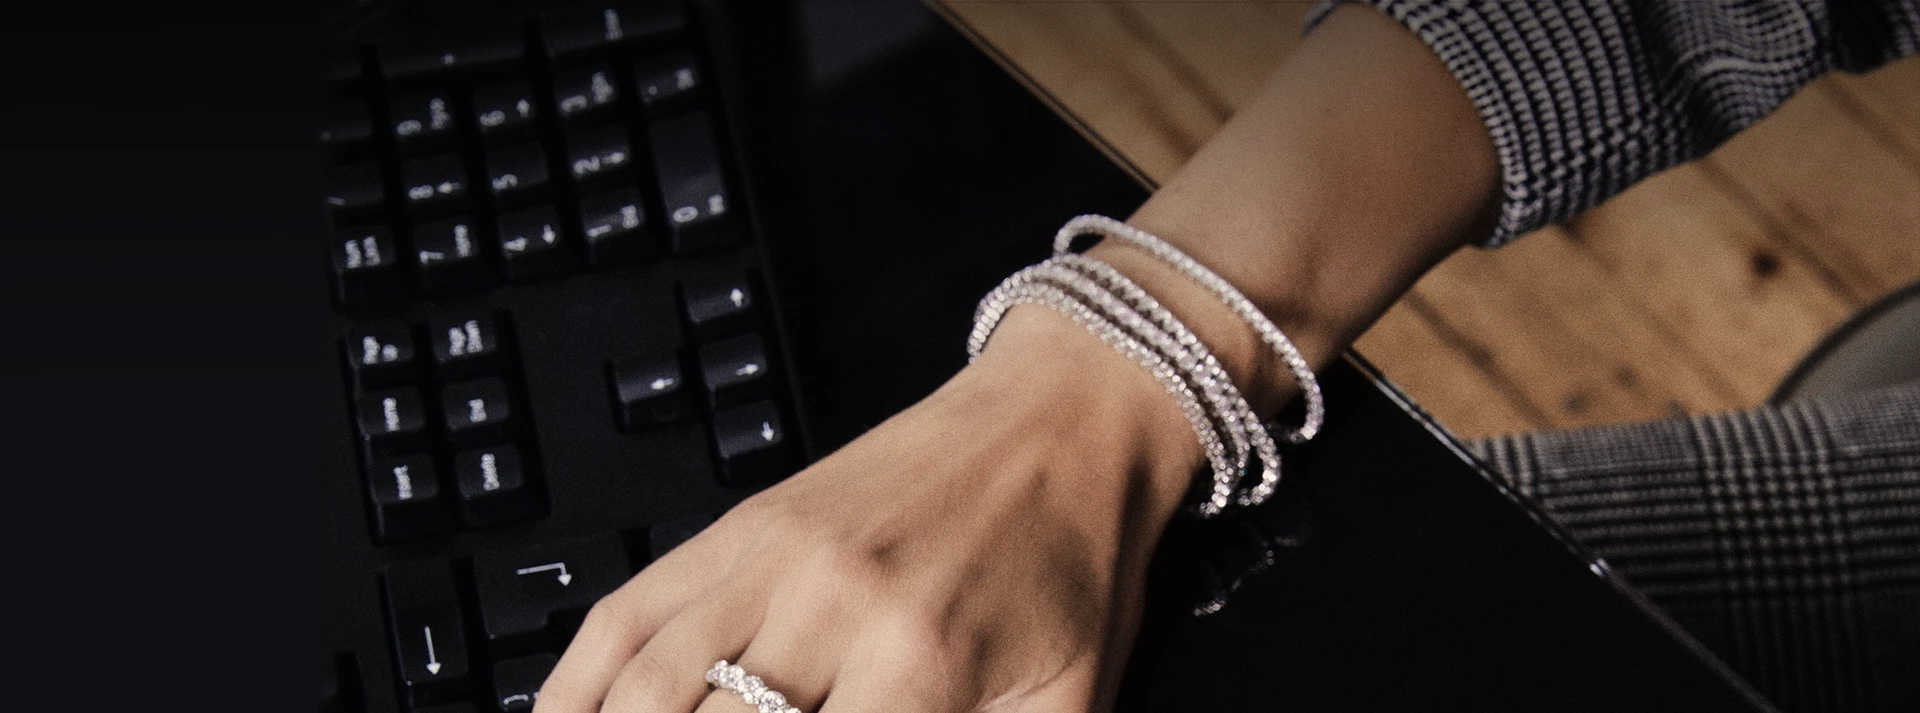 Woman at Keyboard Wearing ROX Bracelet